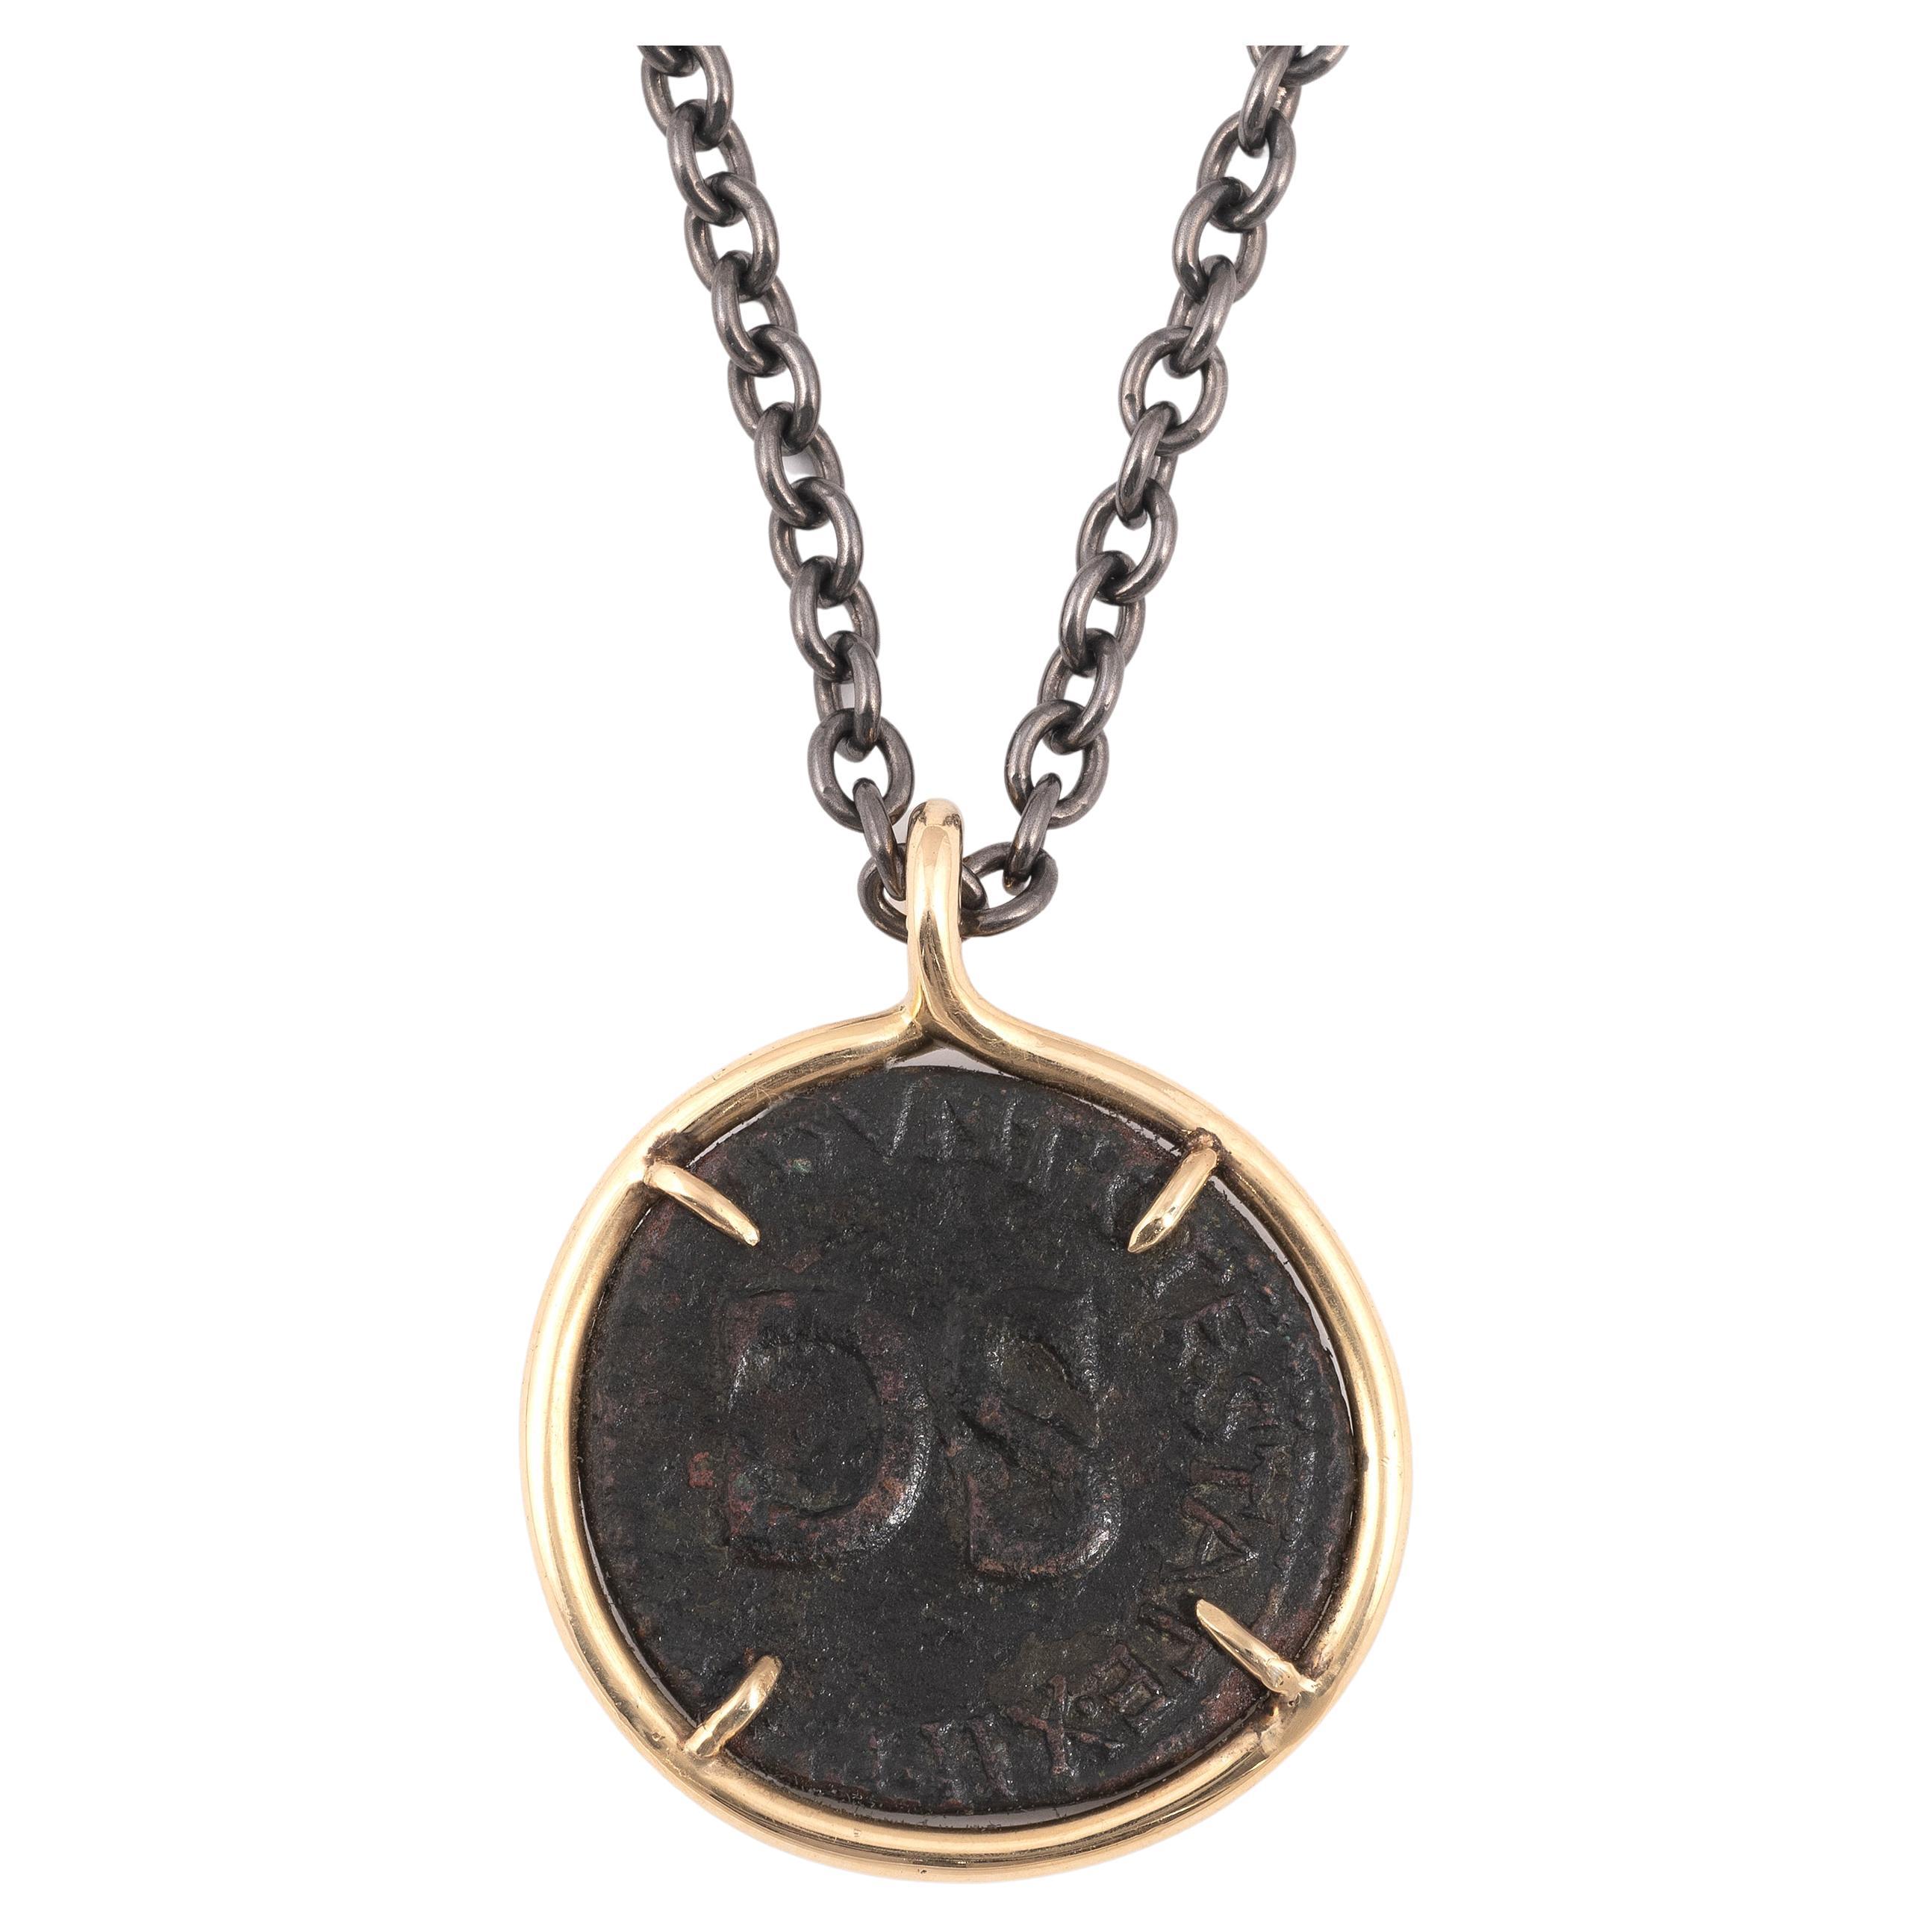 Pièce de monnaie romaine en bronze Tibère Pendentif en or 18kt 37 A.C. 
Sur une chaîne moderne en argent laqué noir avec fermoir en or 18 carats. (Diamètre de la pièce : environ 2,8cm - Longueur de la chaîne : 59cm).
TIBERIUS (19/08/14-16/03/37)